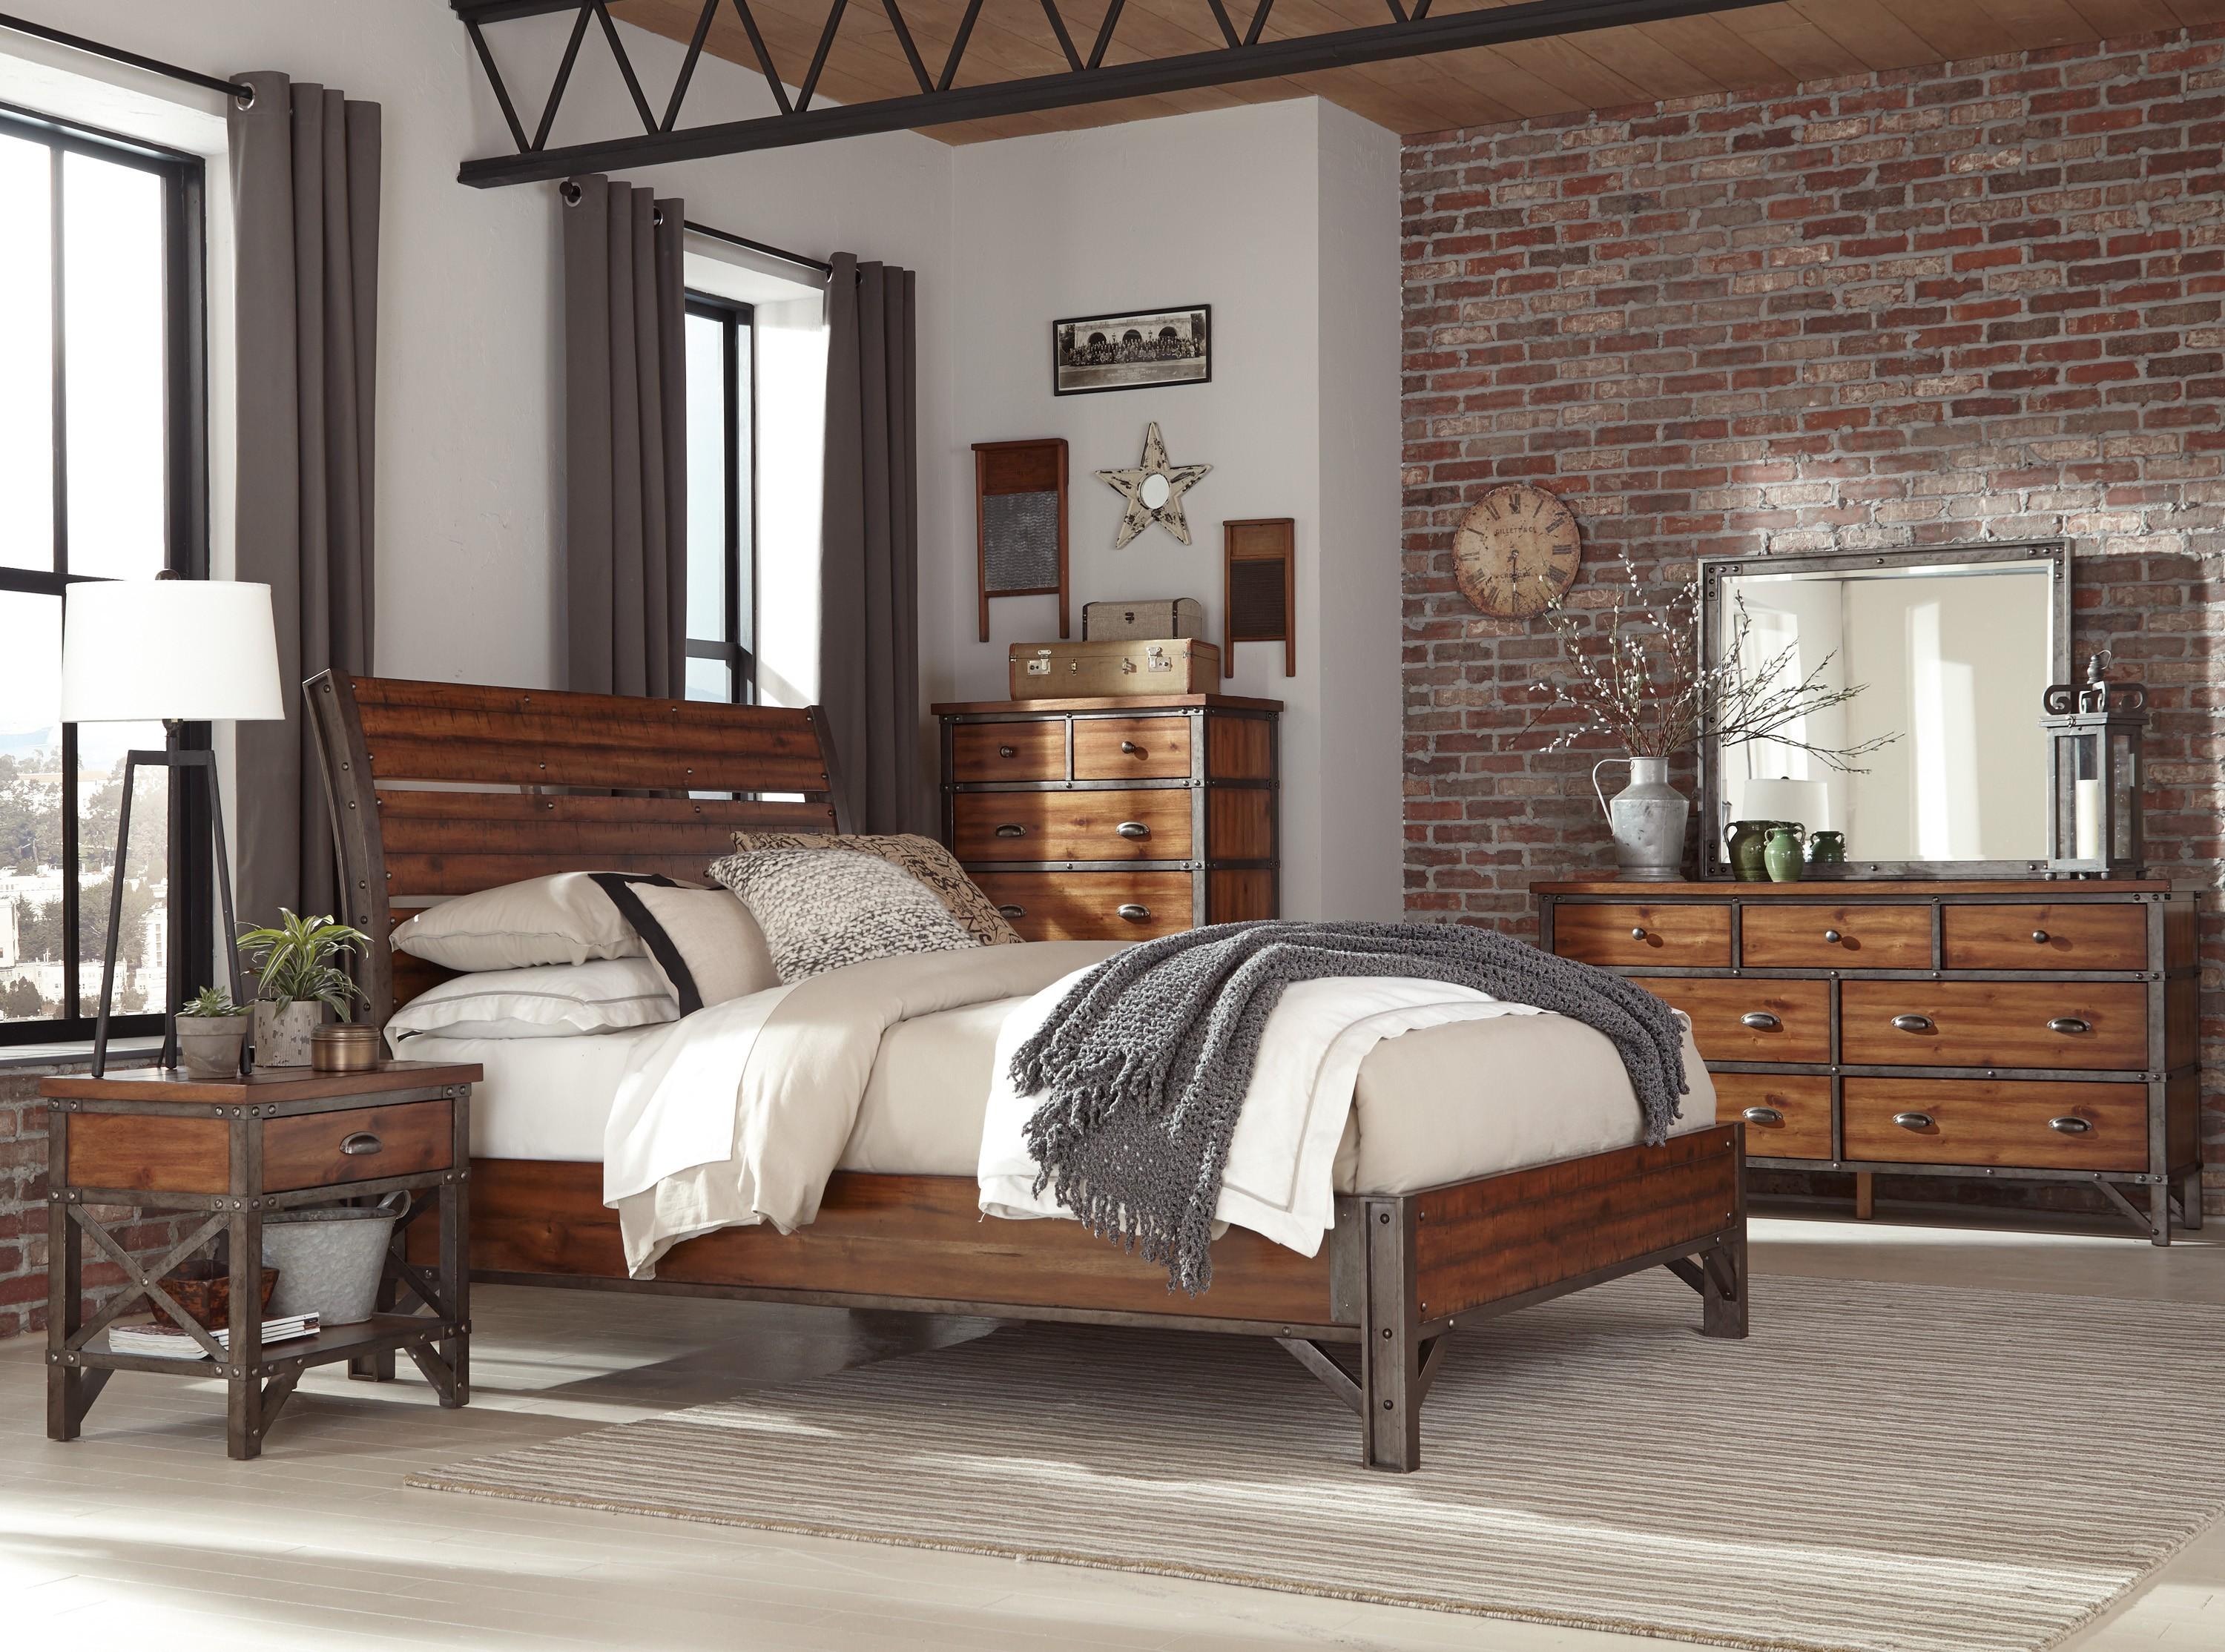 

    
Industrial Rustic Brown & Gunmetal Wood King Bedroom Set 5pcs Homelegance 1715K-1EK* Holverson
